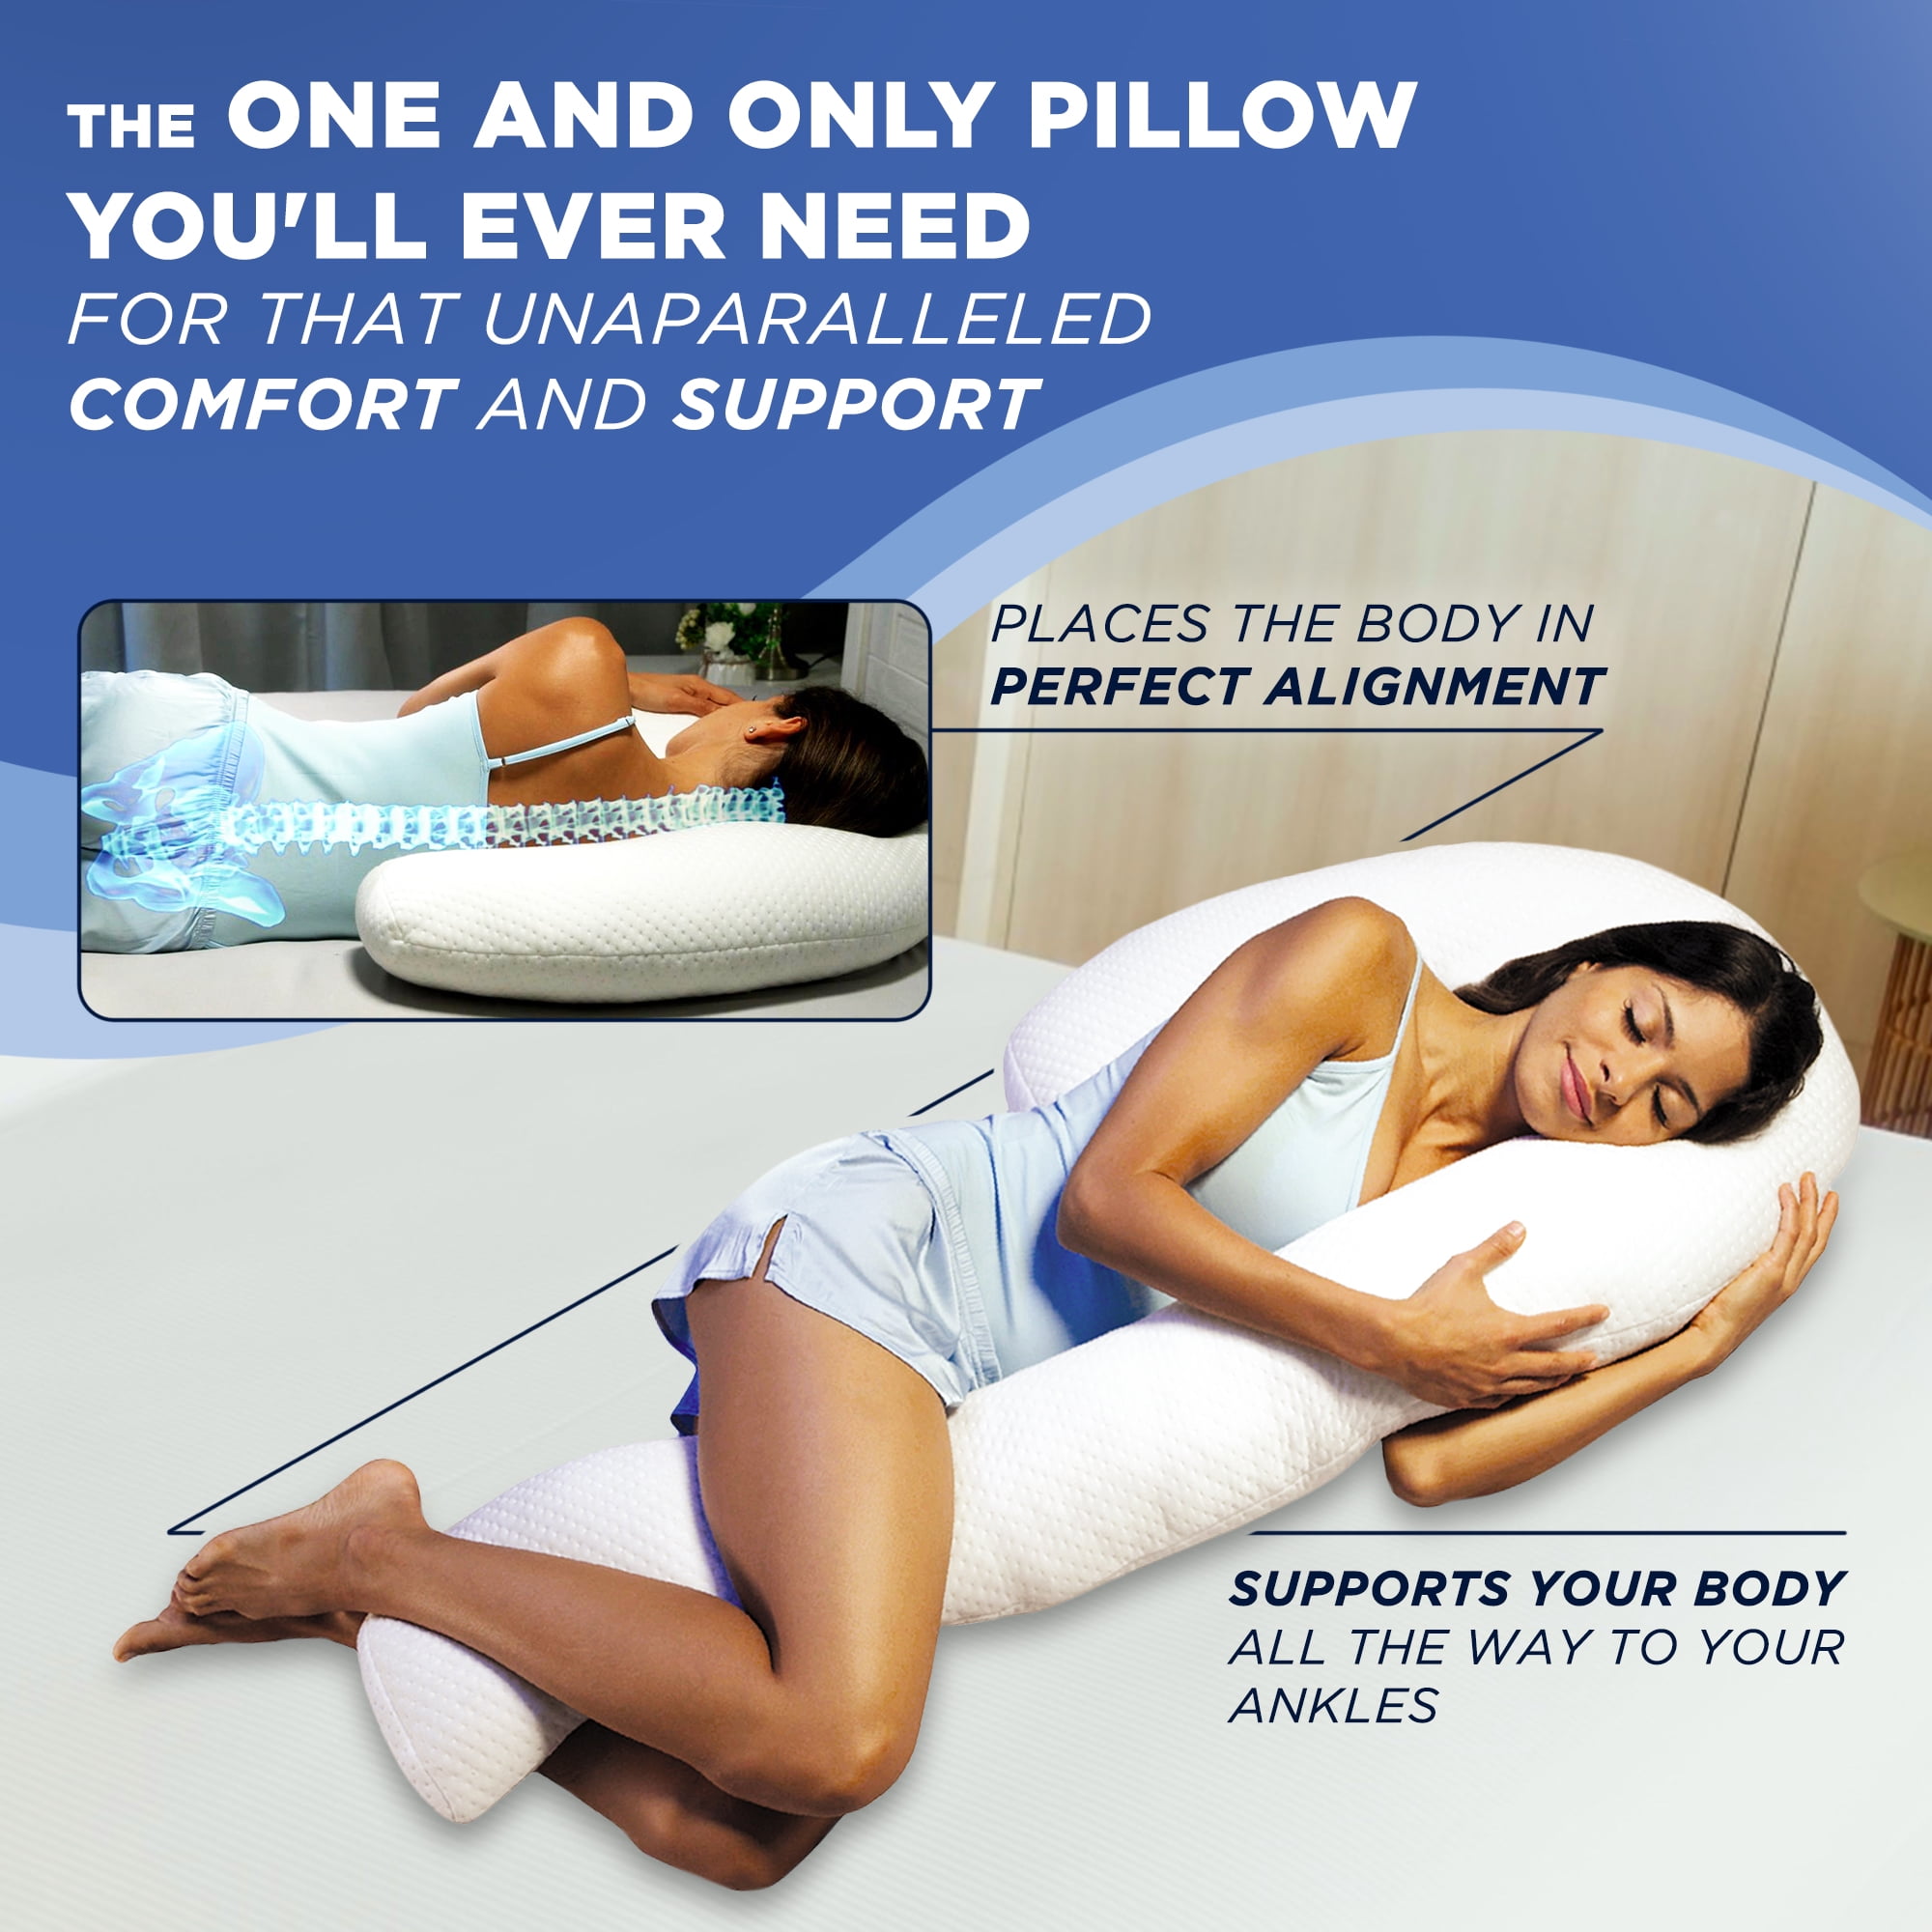 Contour Comfort Swan Pillow 